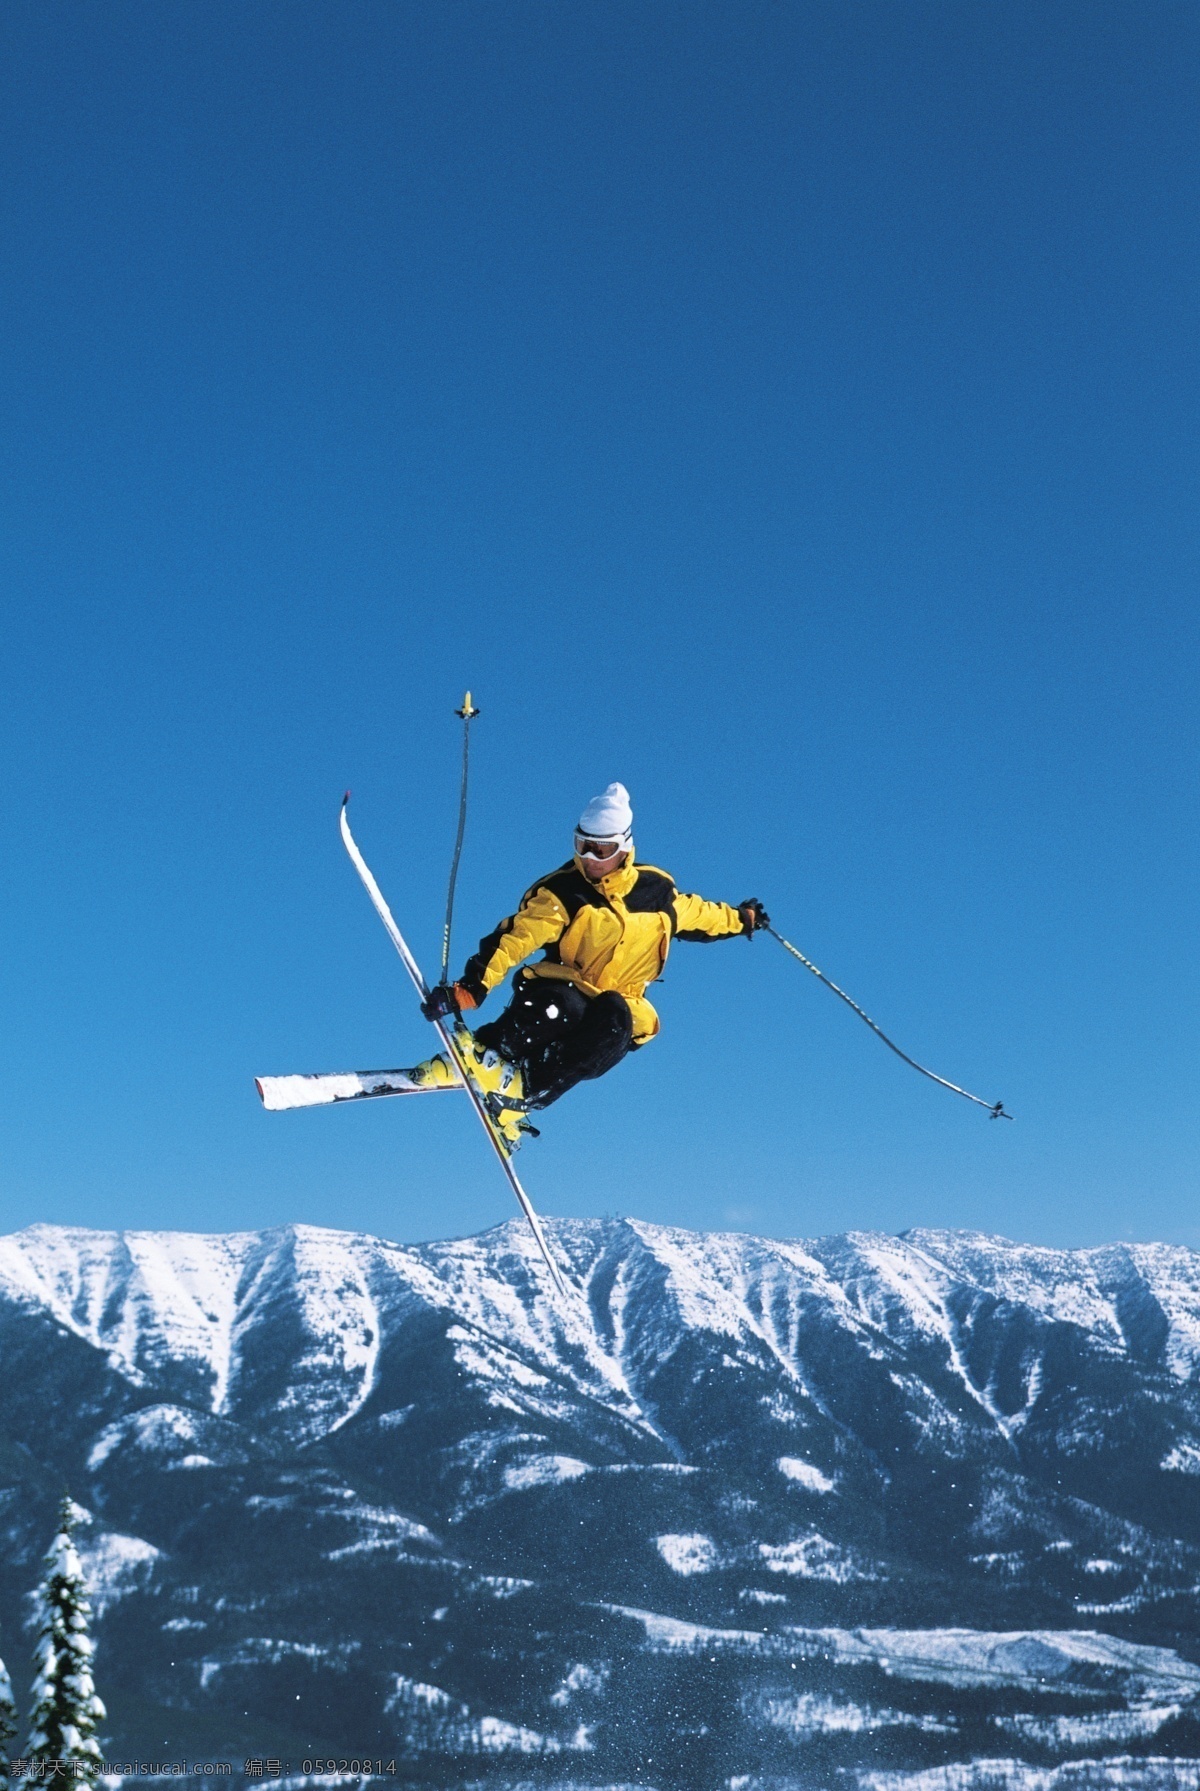 腾空 飞跃 滑雪 运动员 冬天 雪地运动 划雪运动 极限运动 体育项目 运动图片 生活百科 雪山 美丽 雪景 风景 摄影图片 高清图片 滑雪图片